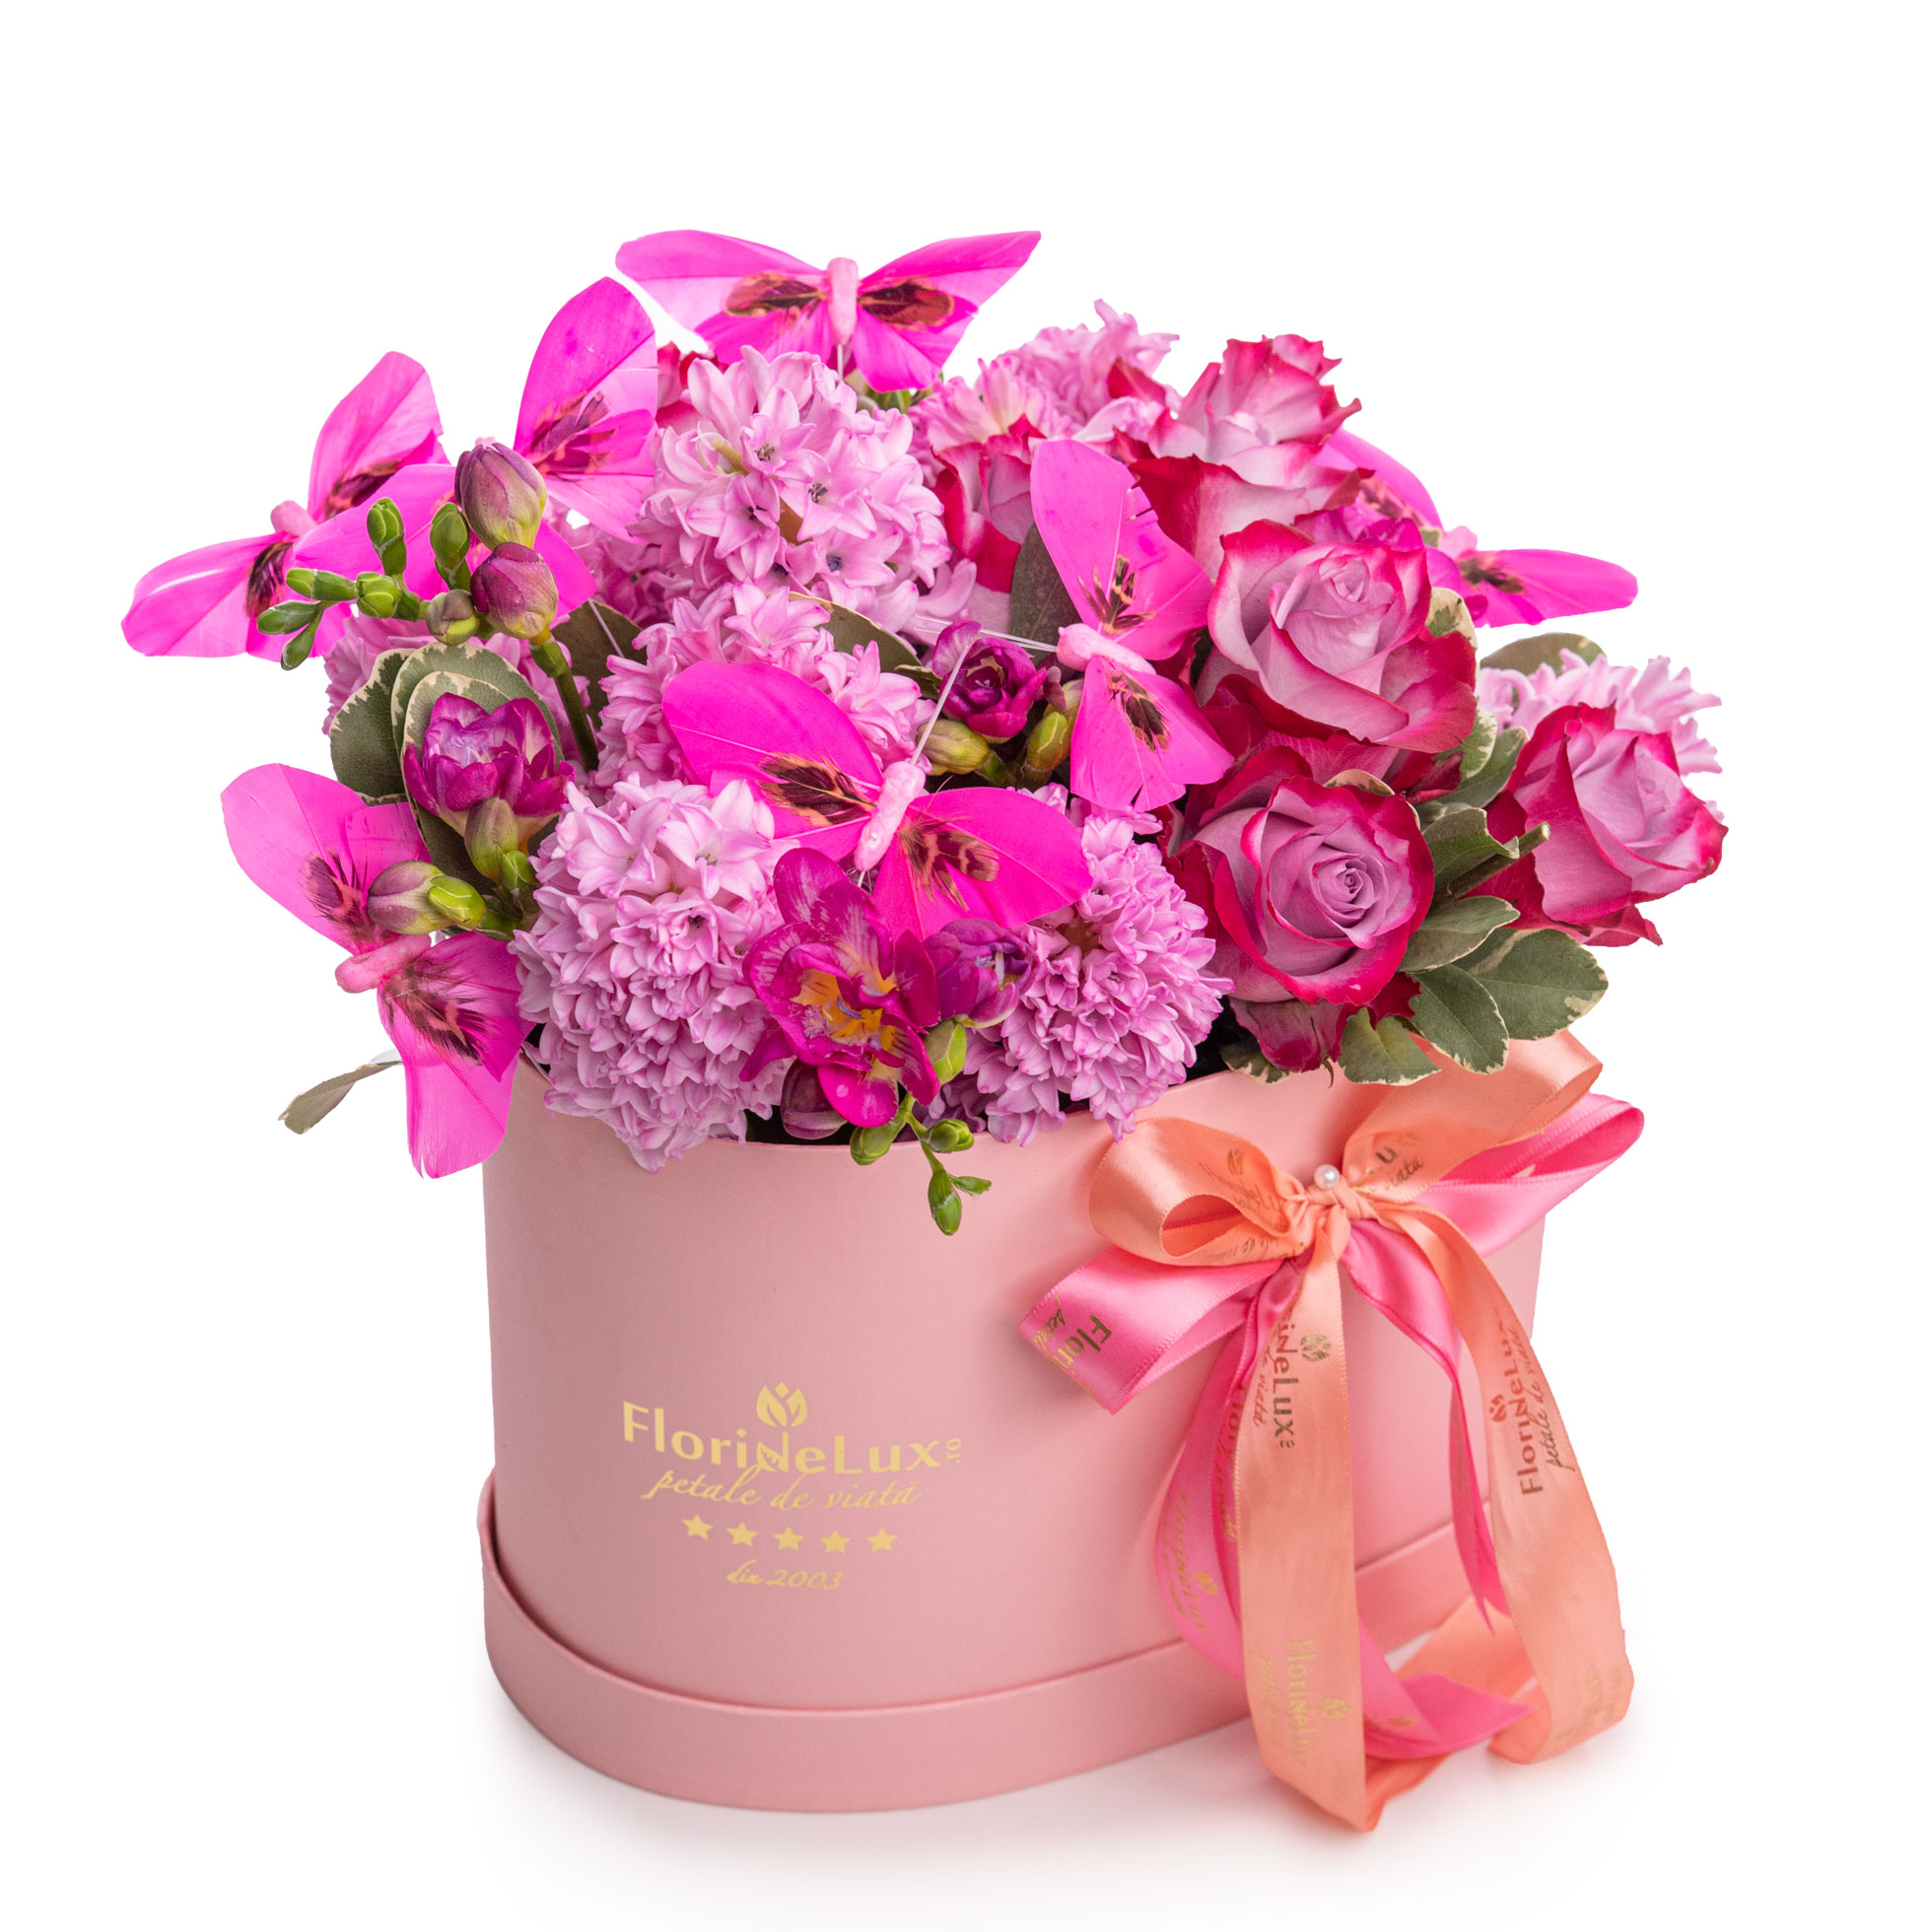 Aranjament floral cu flori roz si accesorii